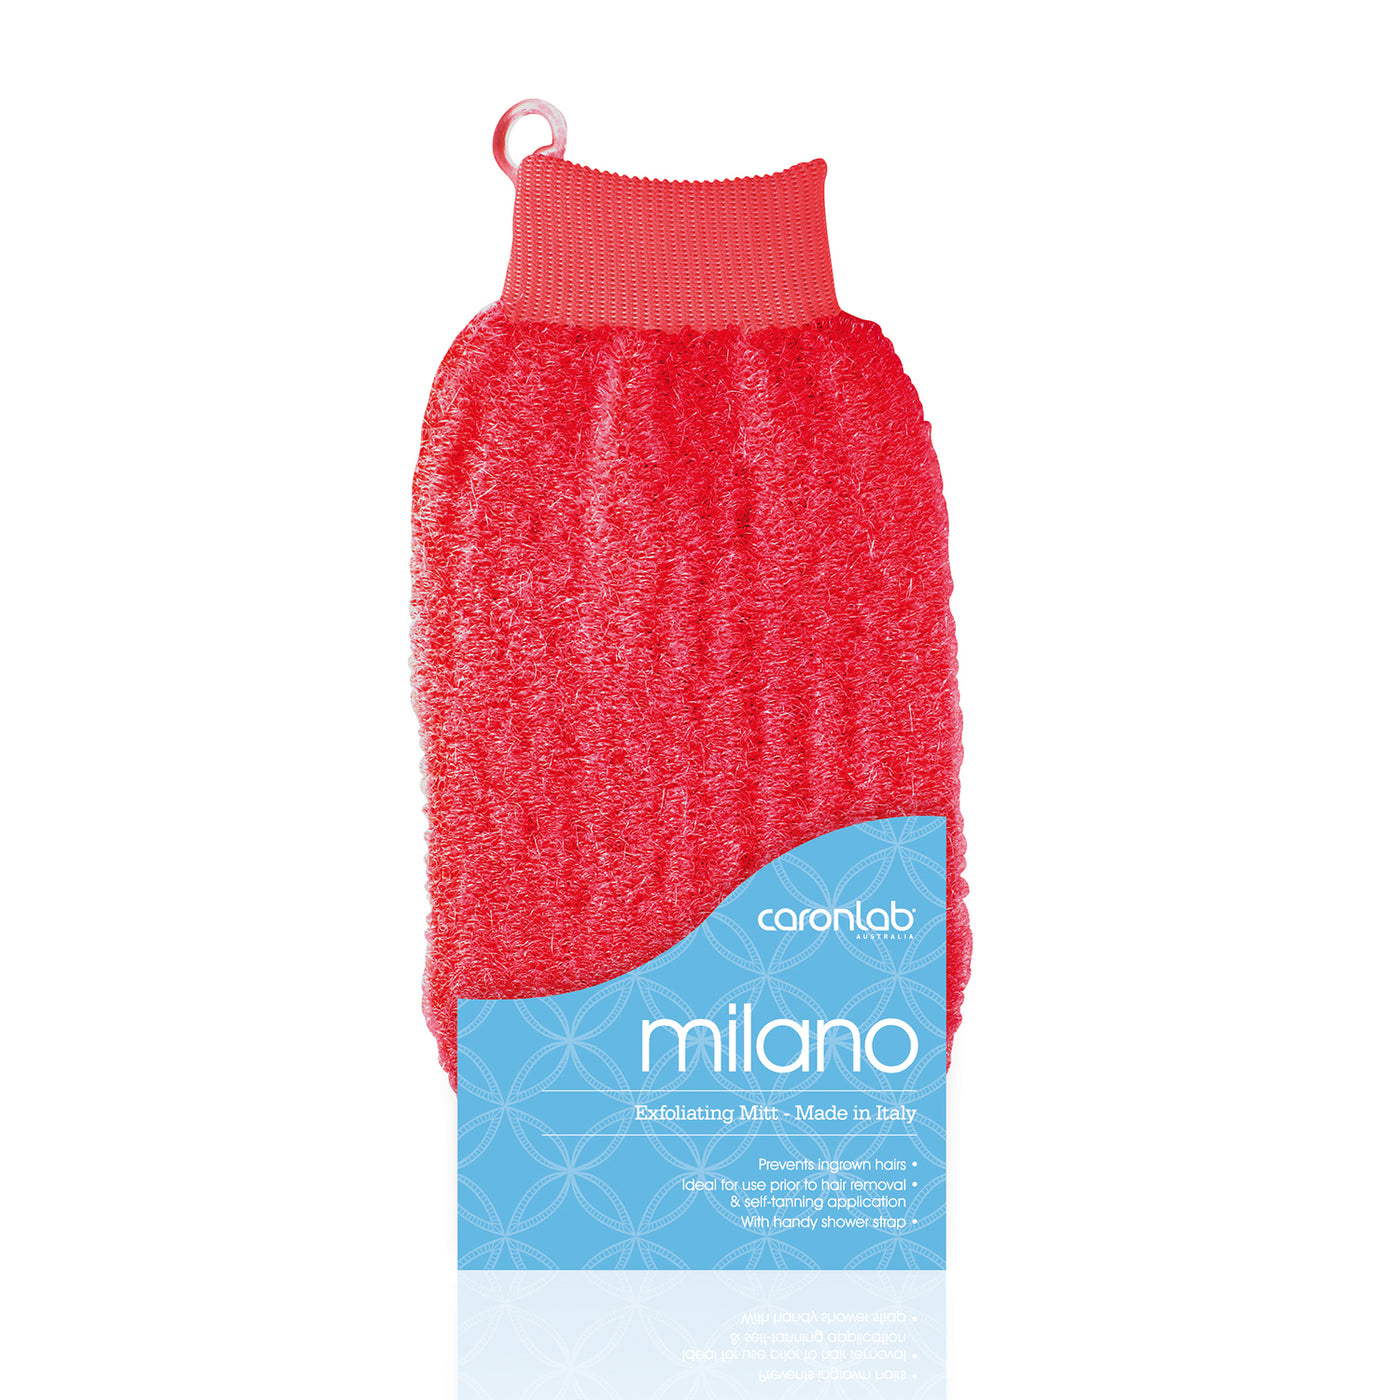 Caronlab Milano Exfoliating Massage Mitt red